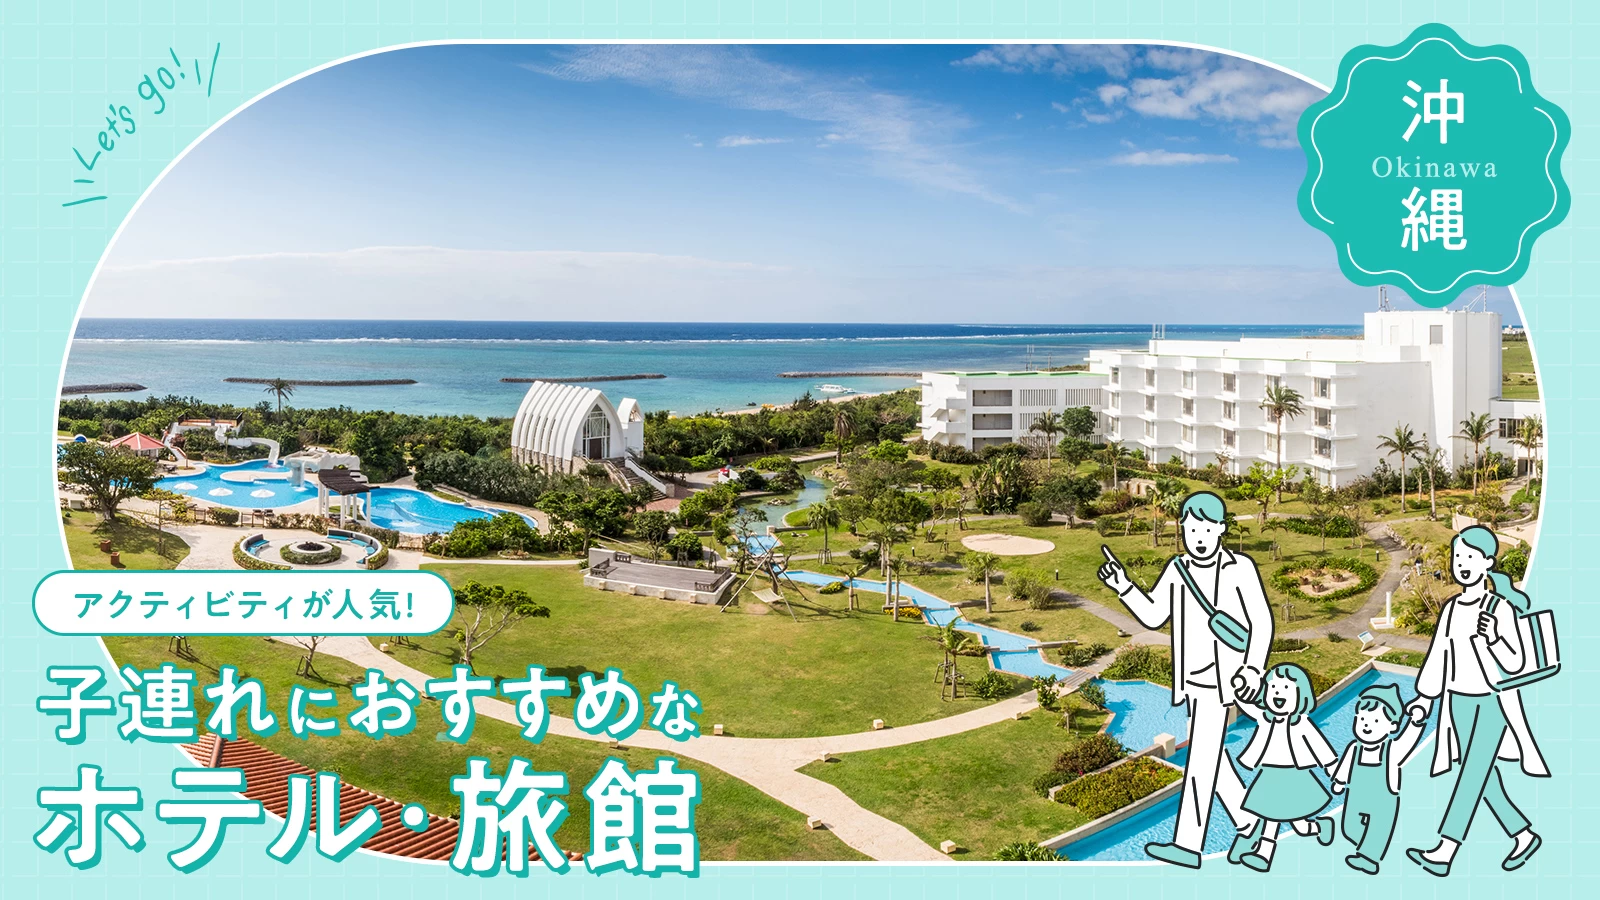 【沖縄】アクティビティが人気の子連れにおすすめなリゾートホテル6選